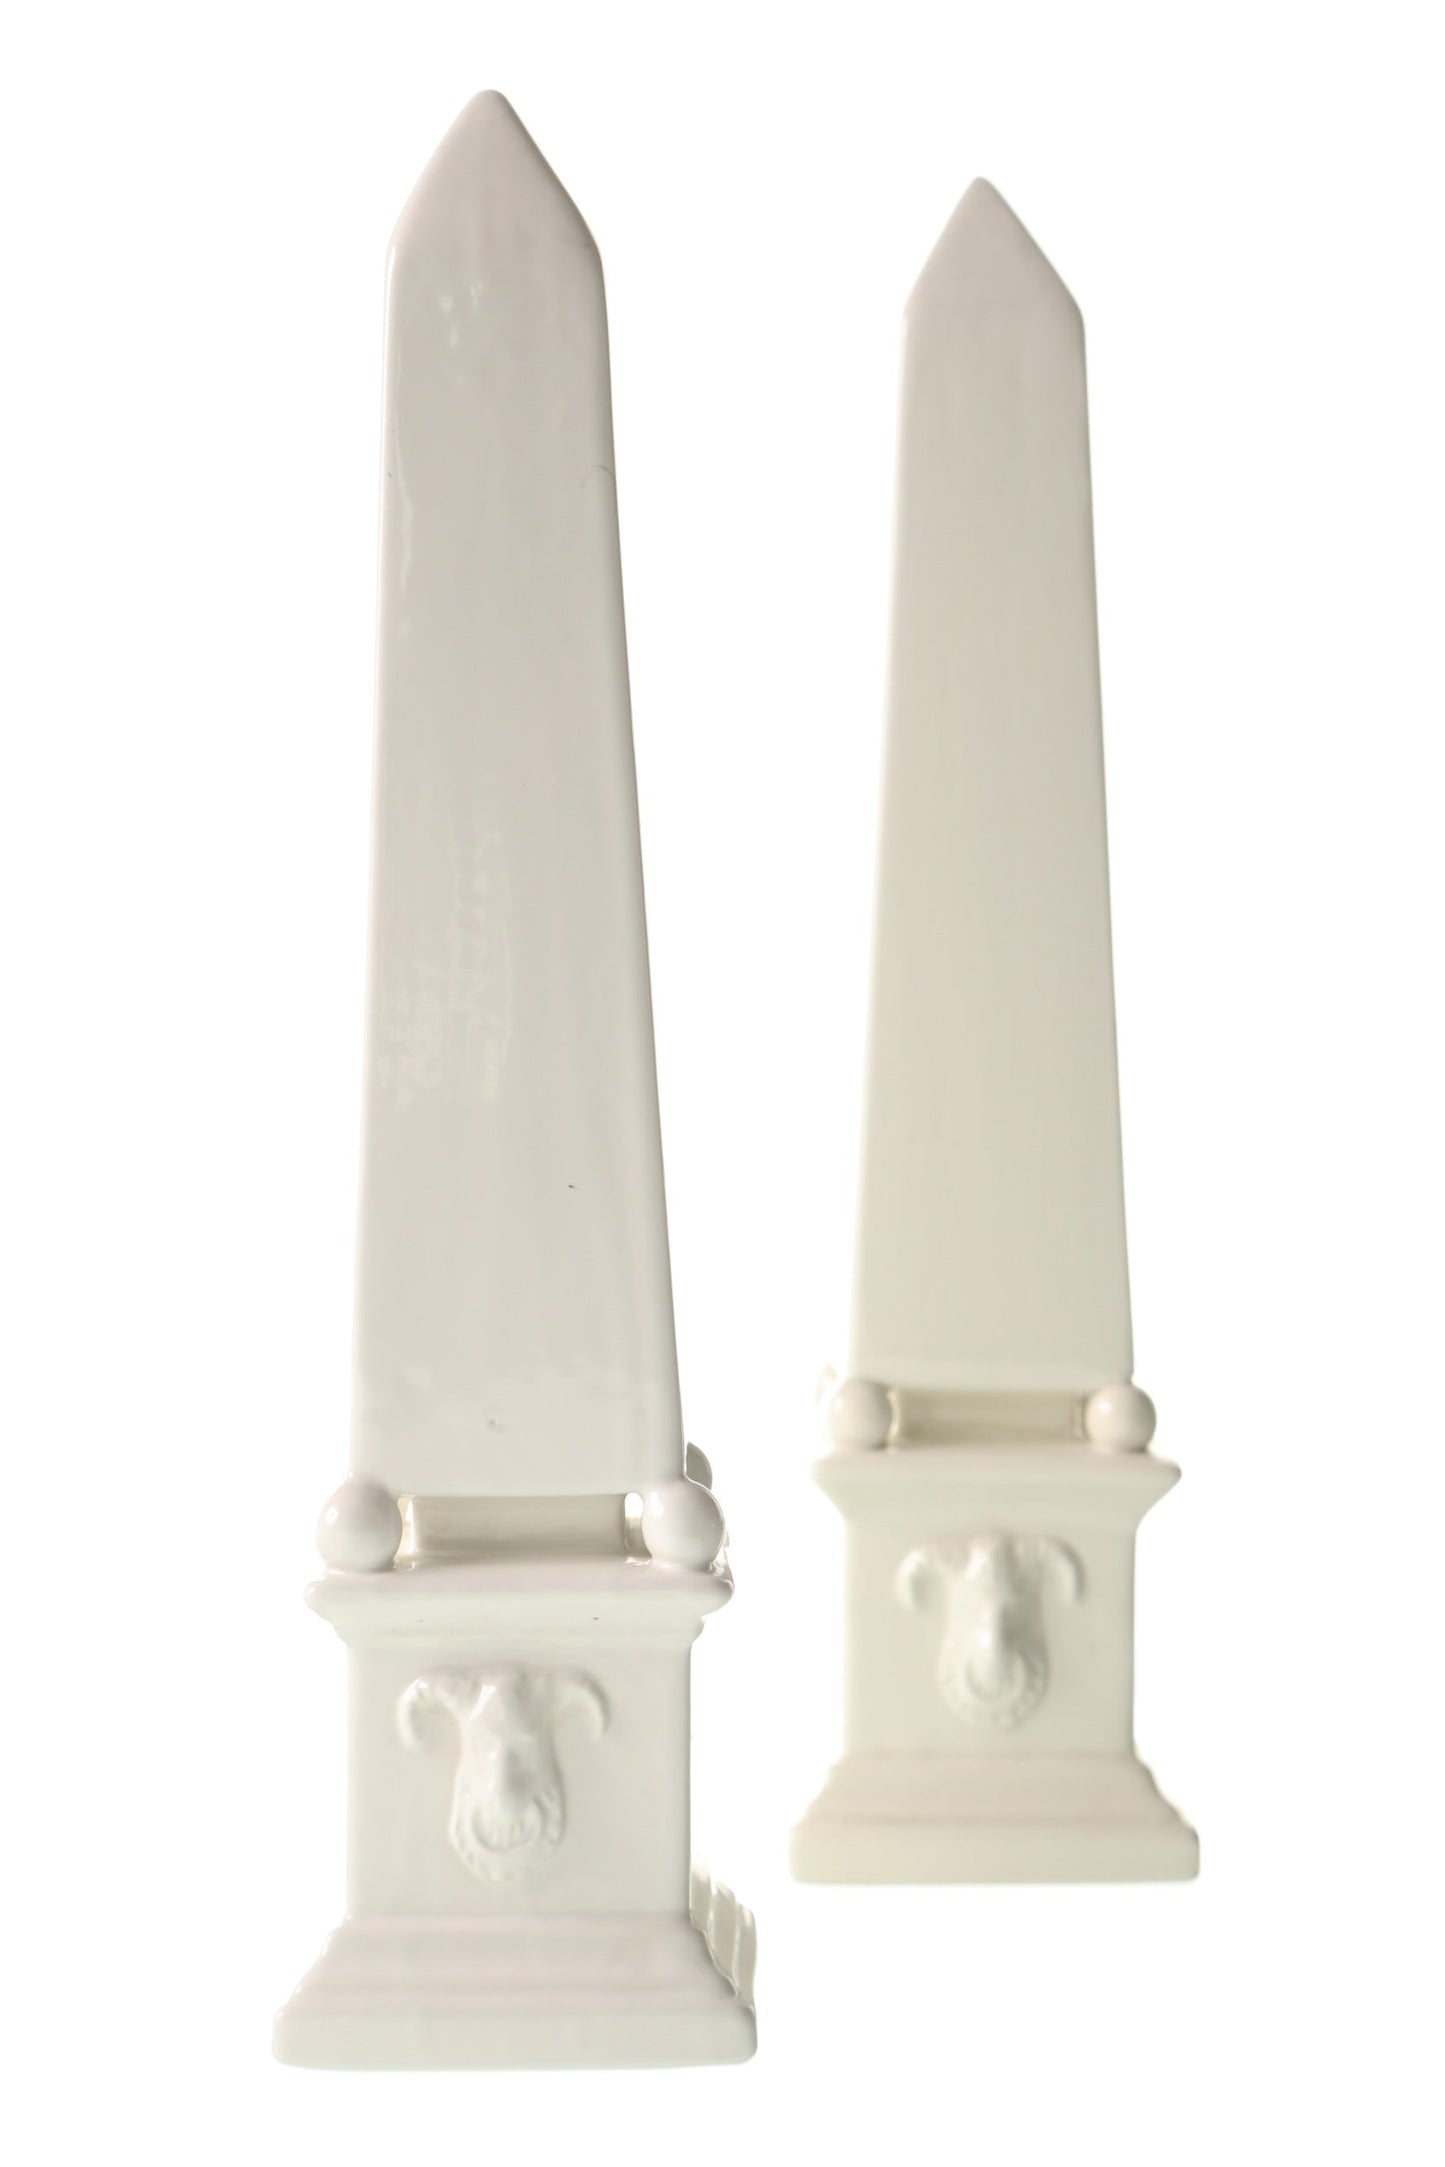 Pair of white ceramic obelisks